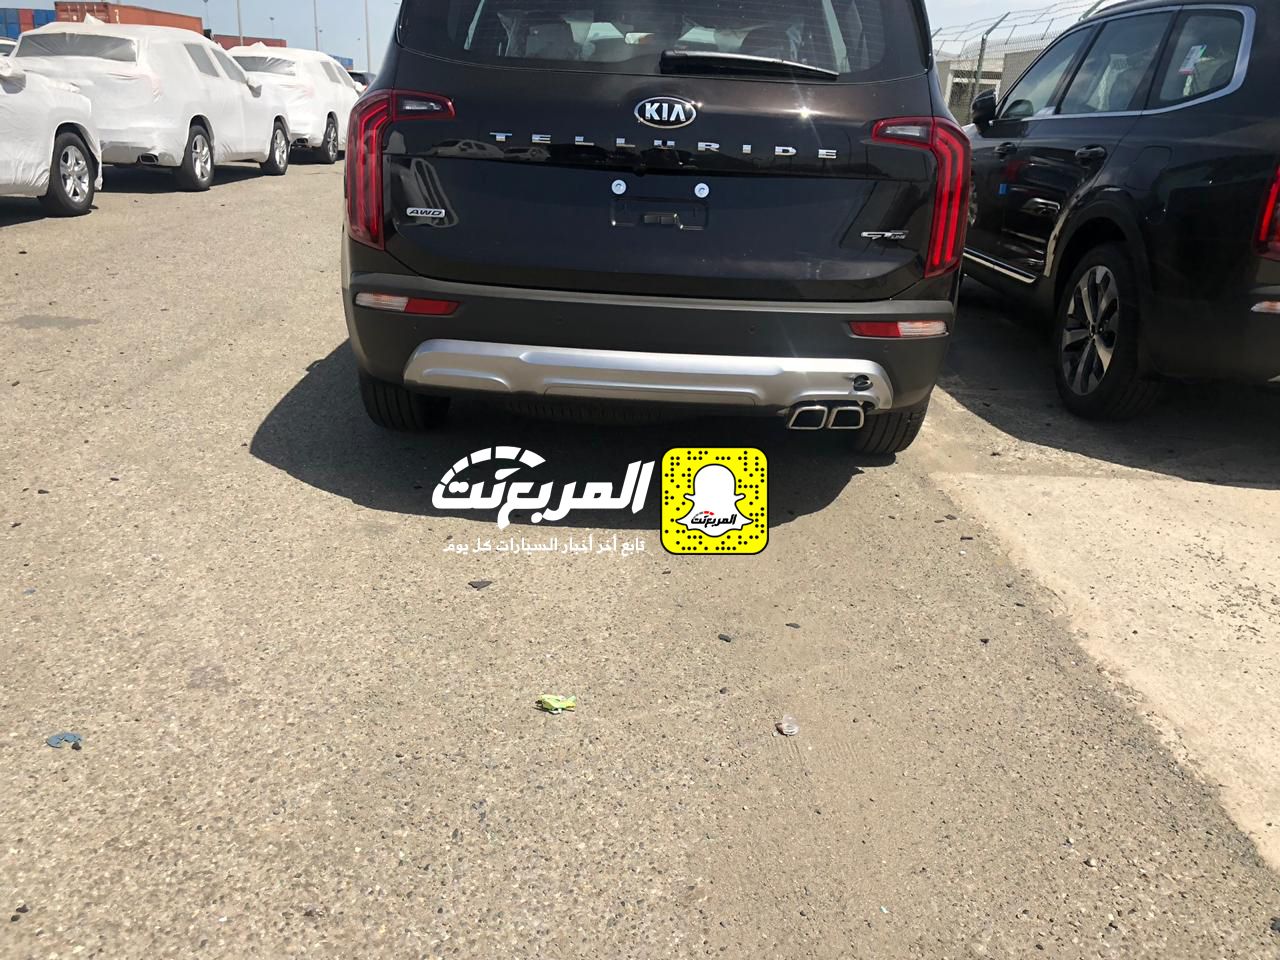 "بالصور" وصول كيا تيلورايد 2020 الجديدة الى السعودية اكبر SUV من كيا + موعد البيع الرسمي 9